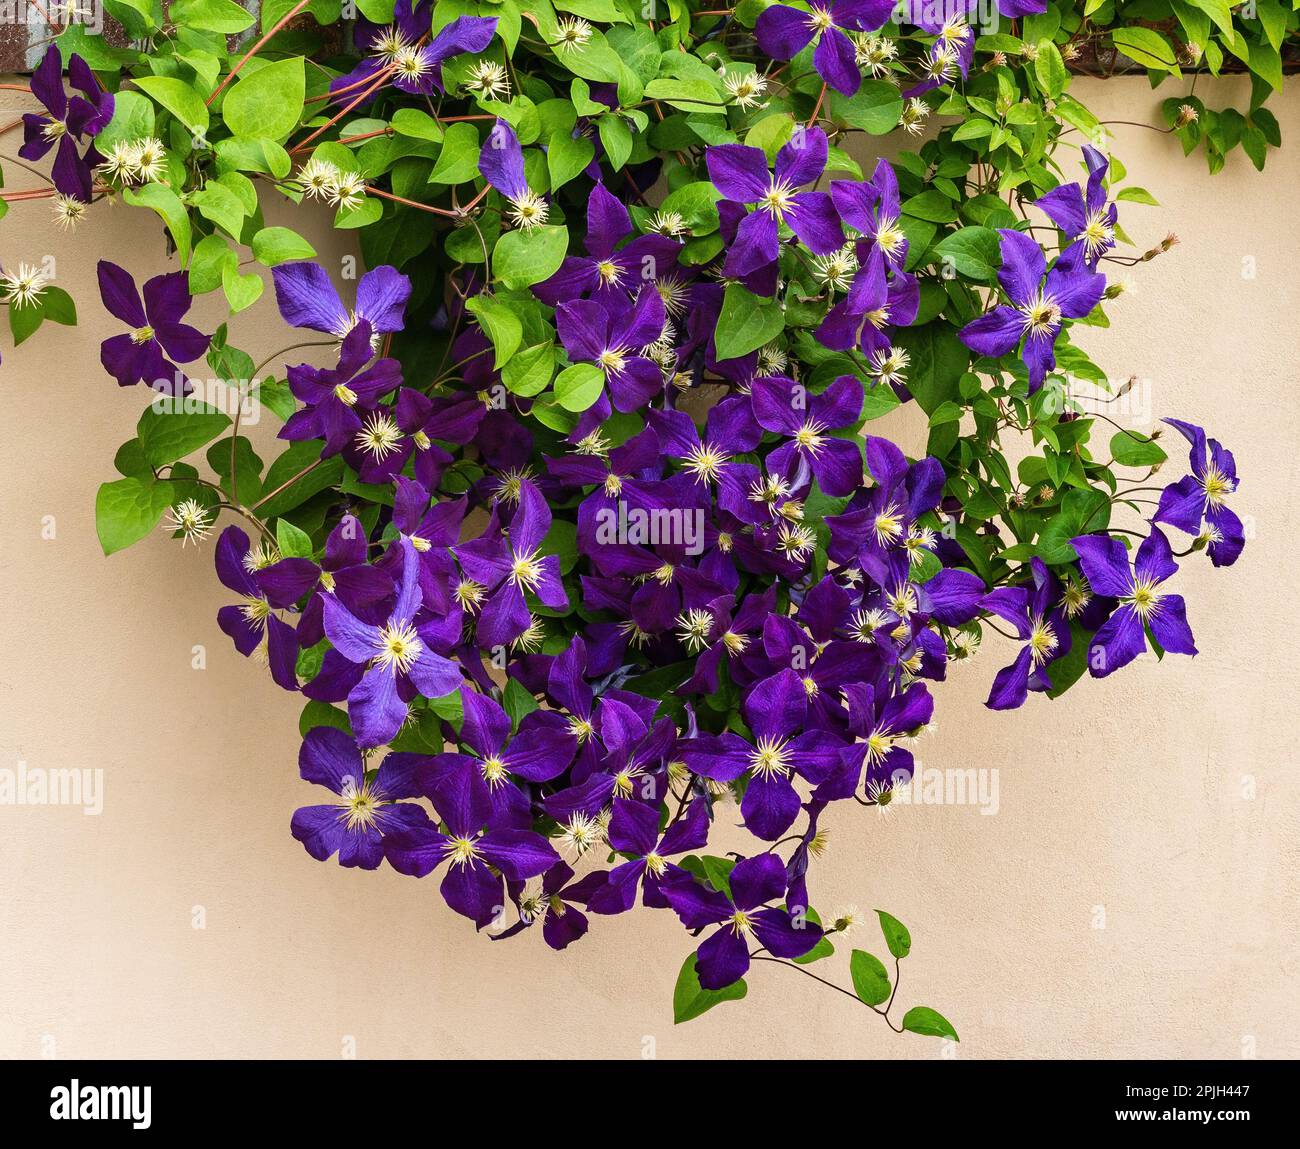 Clematis Vine viola in piena fioritura che scende lungo una recinzione in stucco. Foto Stock